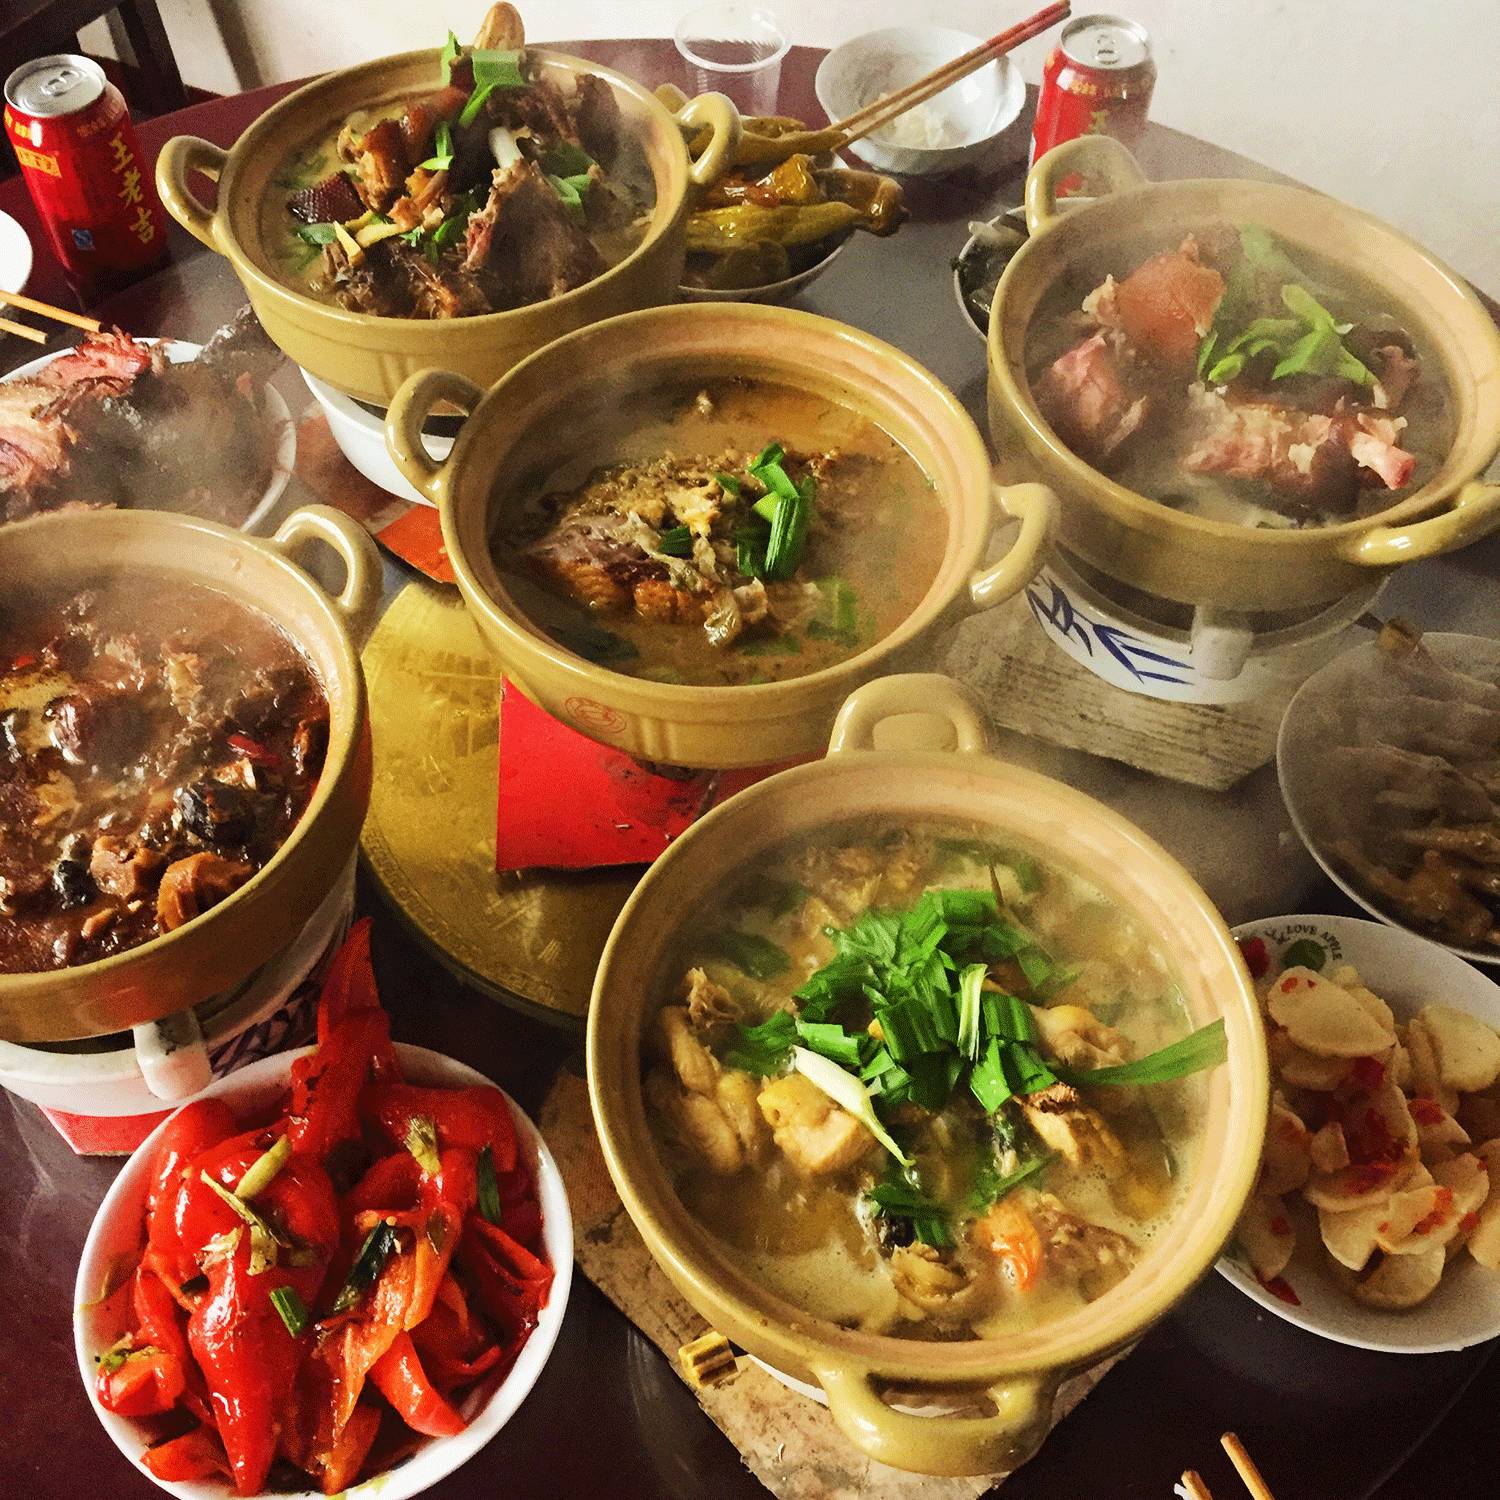 上海徐汇区凌云街道邻里汇社区食堂推特色菜品让居民吃得放心